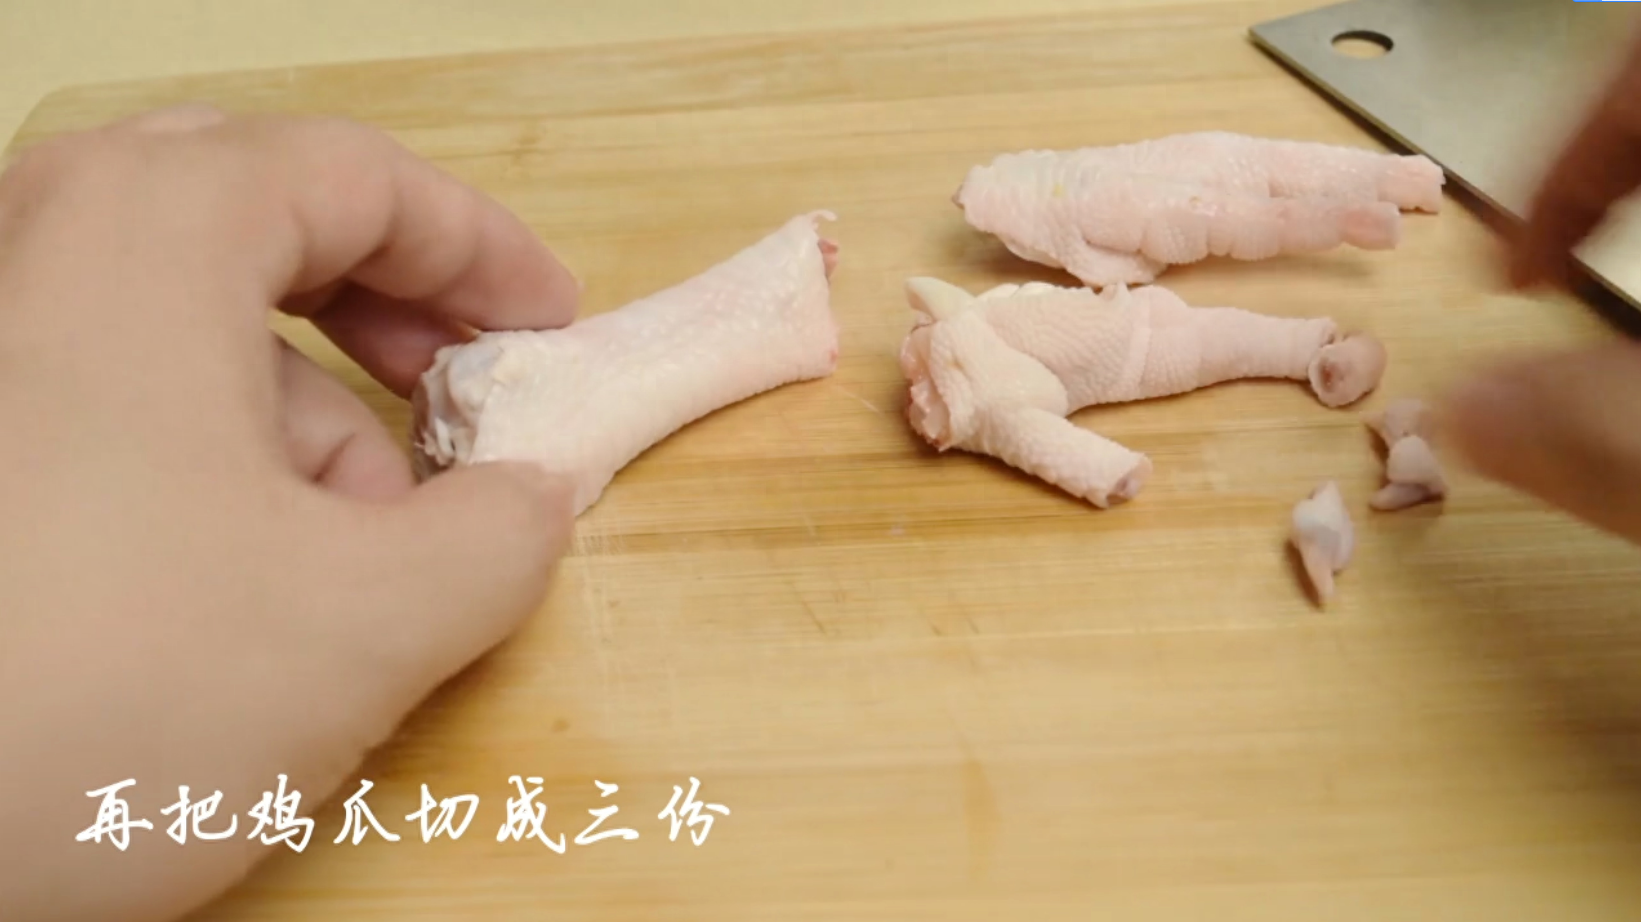 自制泡椒凤爪怎么做视频,如何做泡椒凤爪好吃又简单